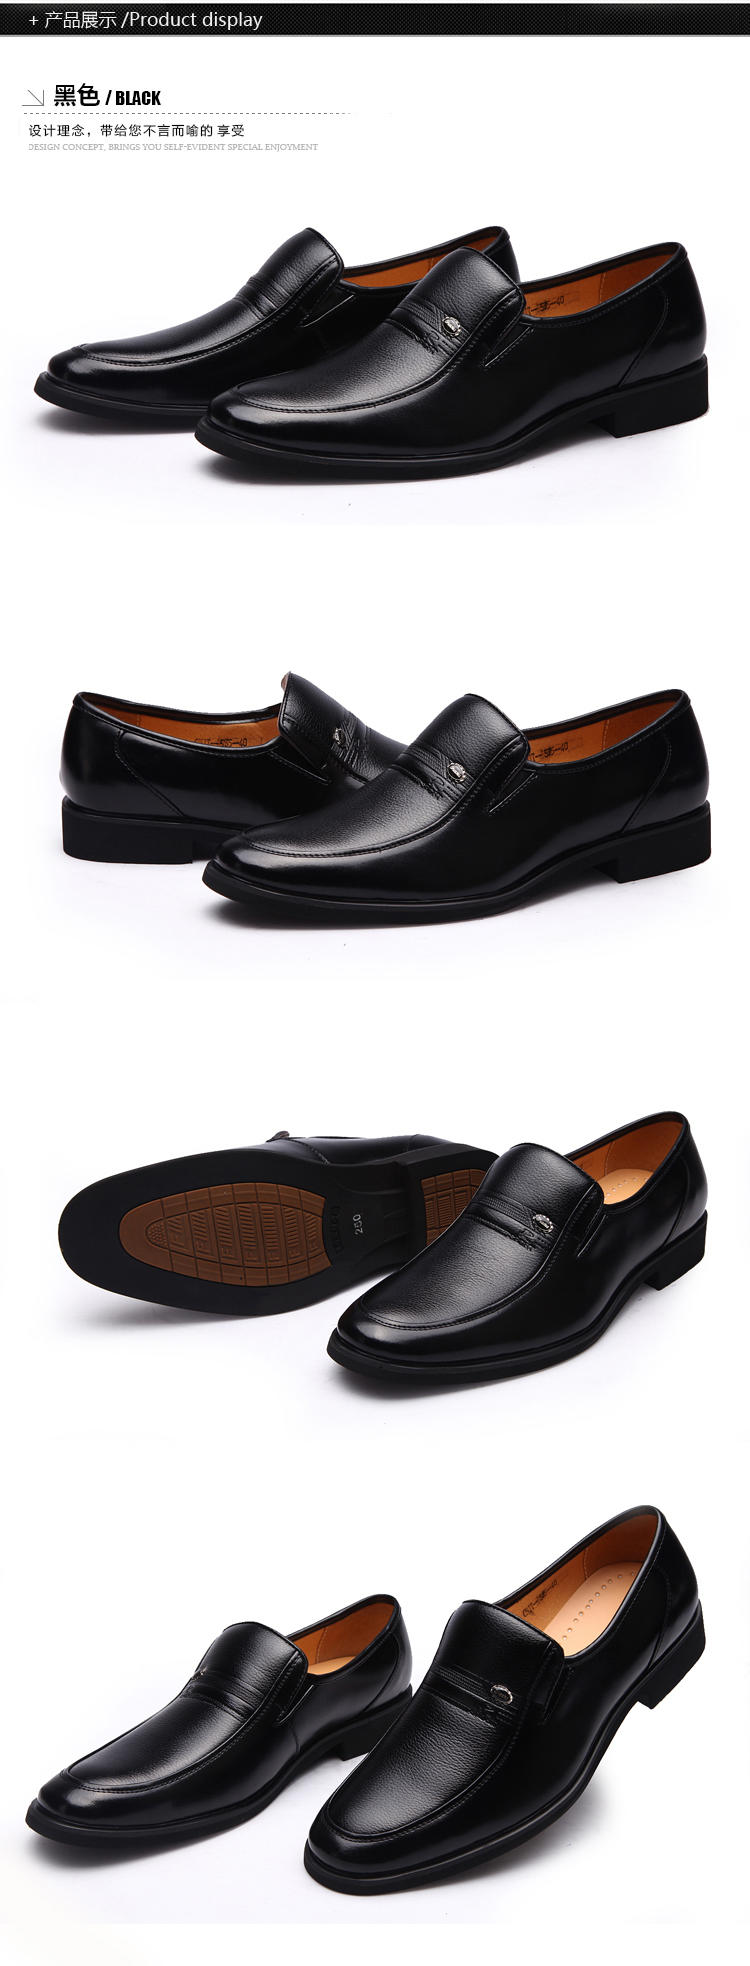 （邮储特卖）米斯康 新款软皮男士商务皮鞋 正装皮鞋透气休闲单鞋子男0535-1